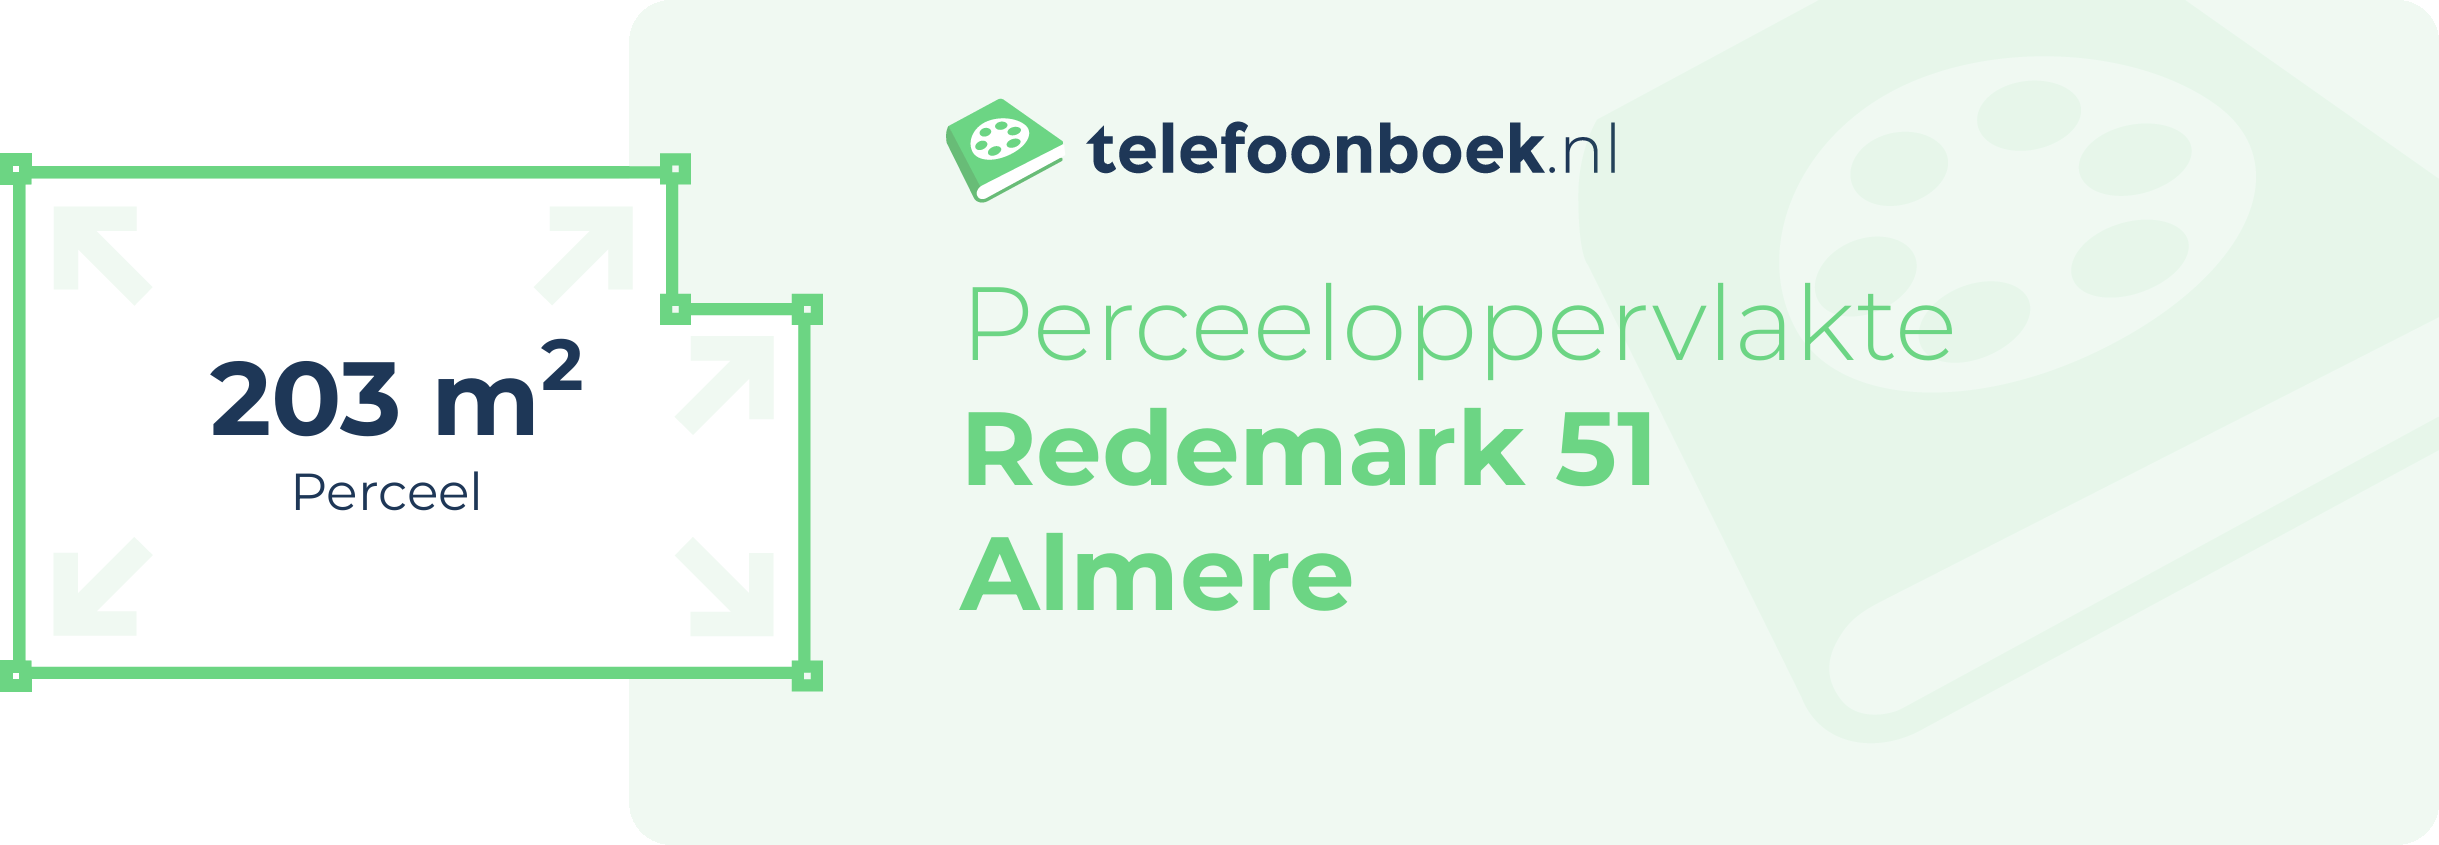 Perceeloppervlakte Redemark 51 Almere